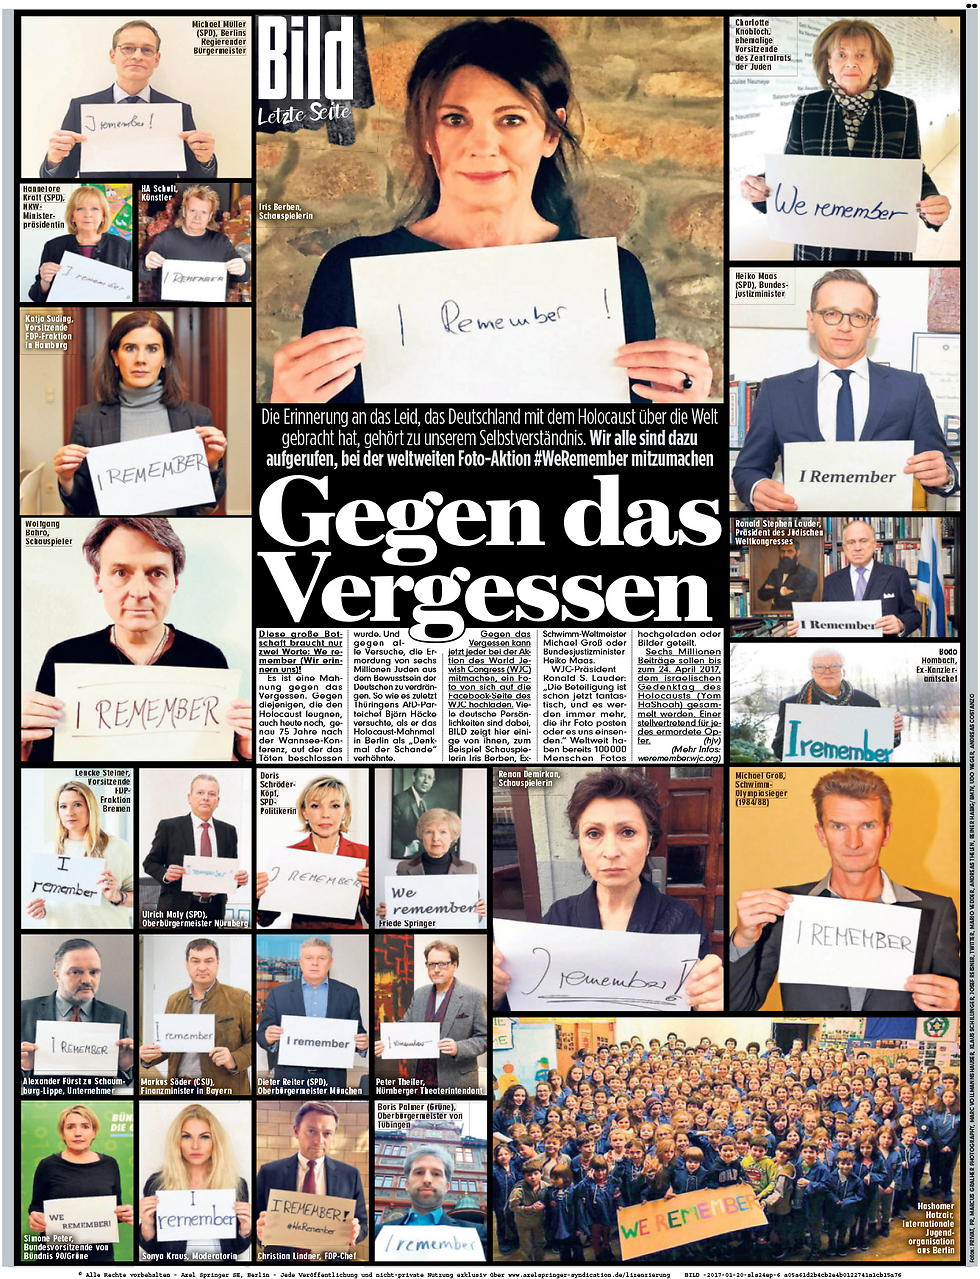 הכתבה בעיתון בילד הגרמני, עם נבחרי המדינה ()